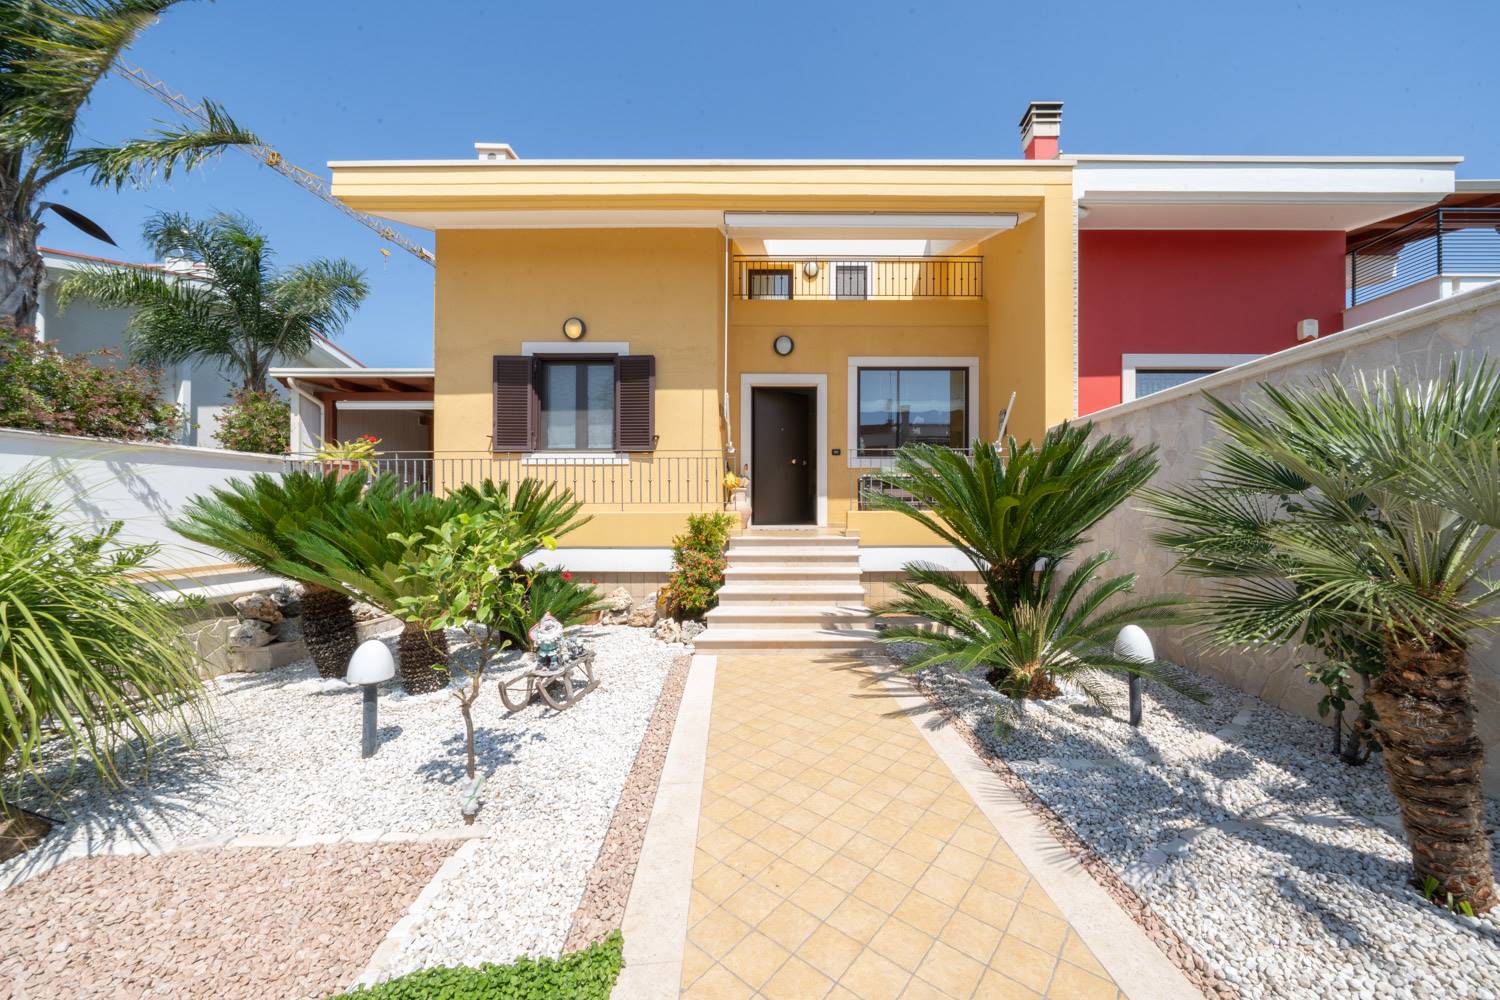 Villa in vendita a Palo del Colle, 5 locali, zona Località: AURICARRO, prezzo € 315.000 | CambioCasa.it